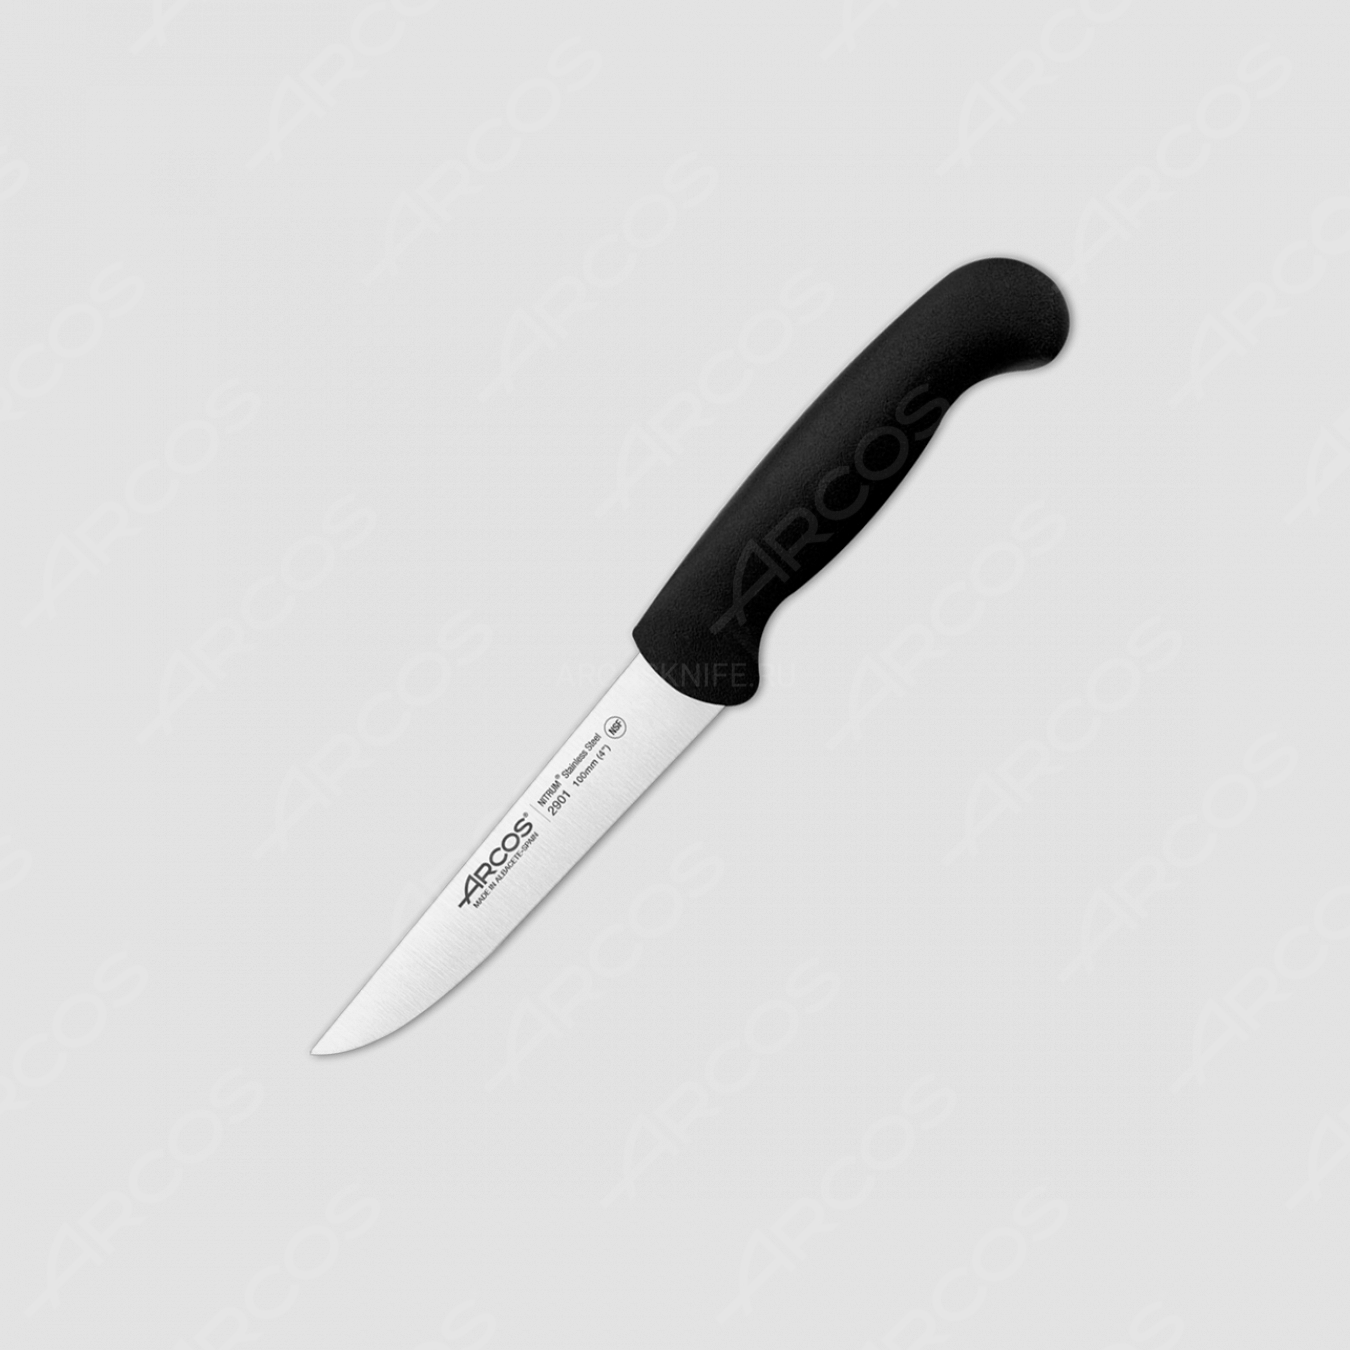 Нож кухонный, для чистки 10 см, цвет рукояти черный, серия 2900, ARCOS, Испания